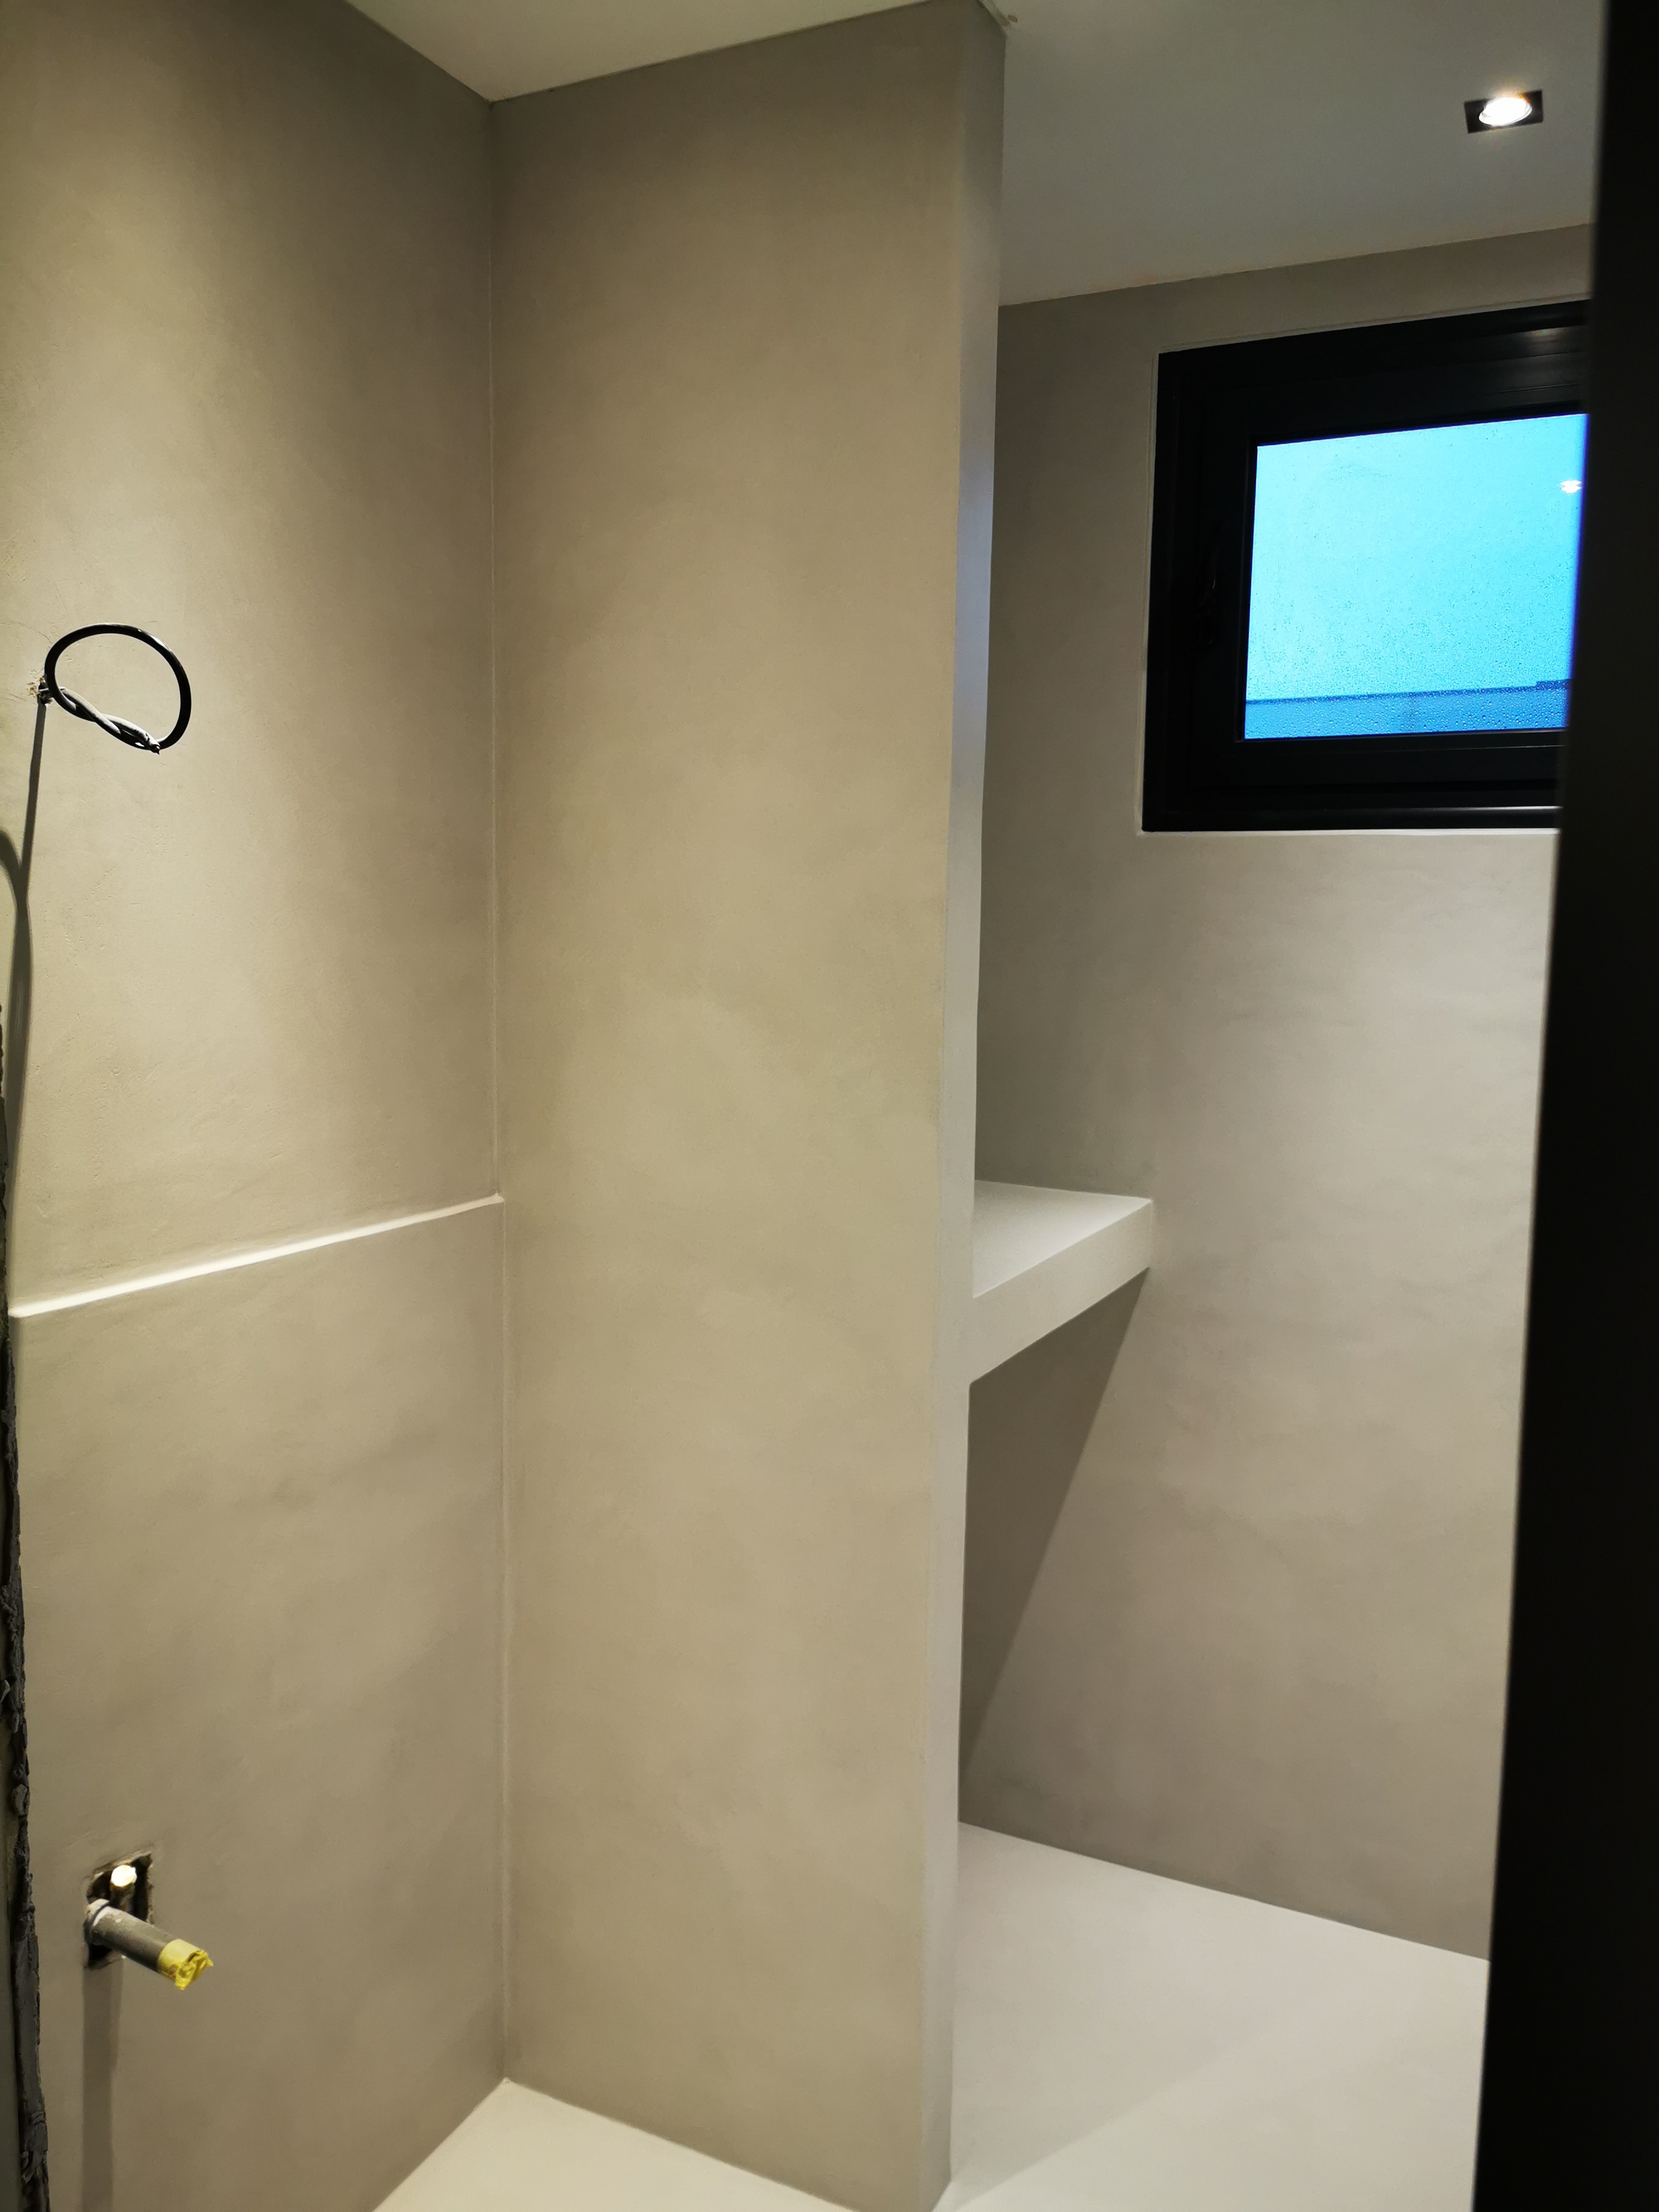 élégante rénovation d'une salle de bain en béton ciré vernis mat couleur gris cendré à Bordeaux en Aquitaine pour un particulier